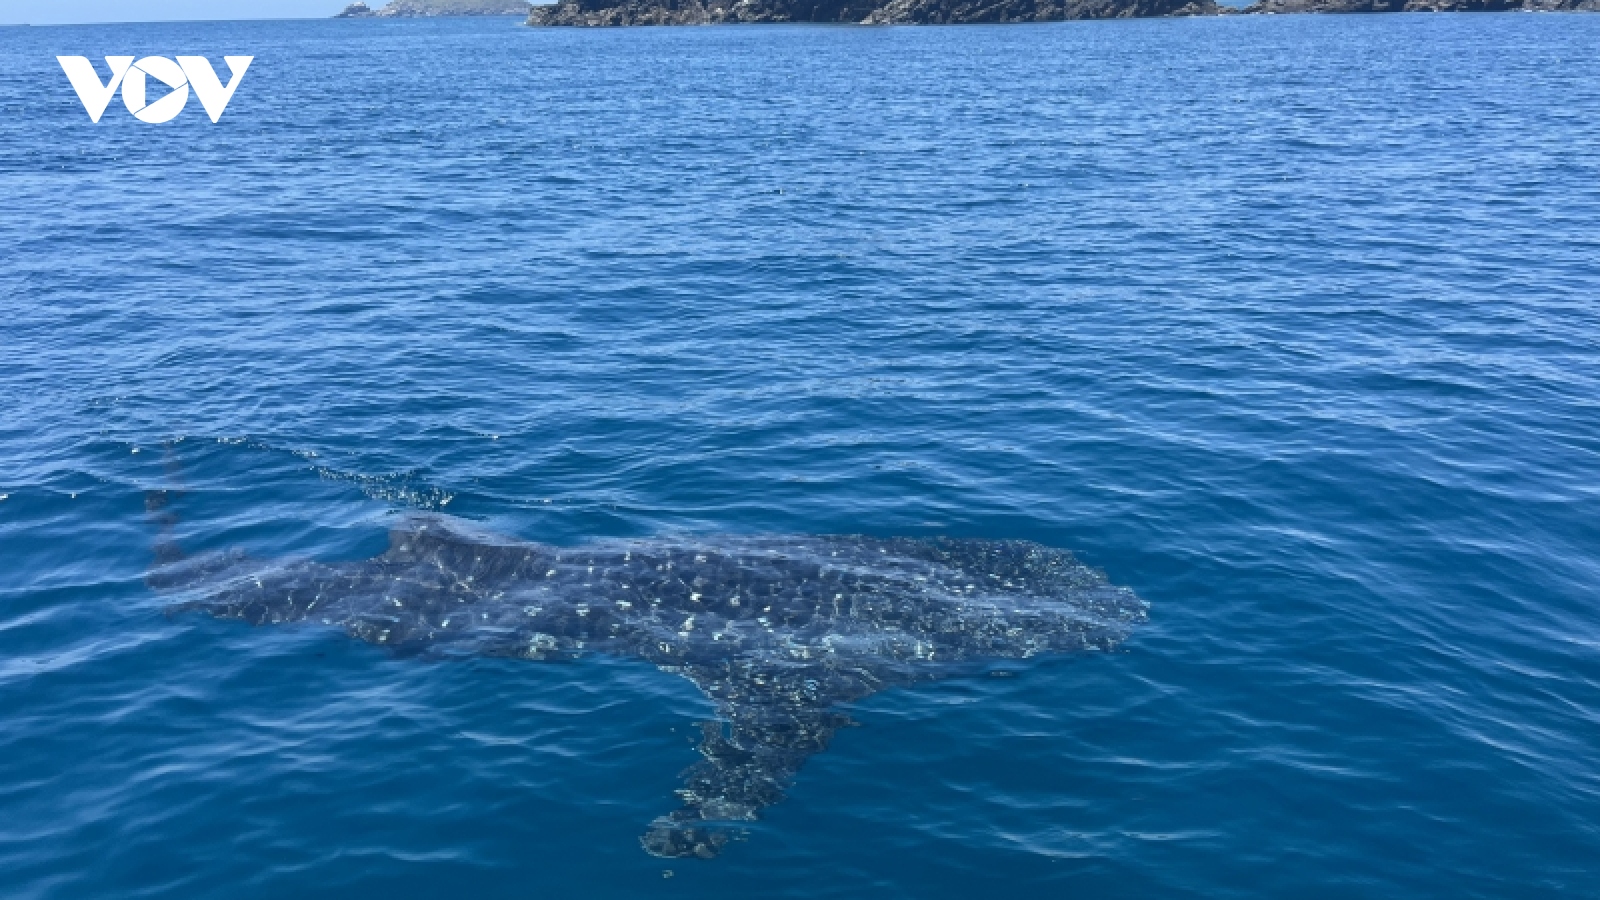 Du khách reo hò khi thấy cá nhám voi dài 4m bơi ở biển Quy Nhơn